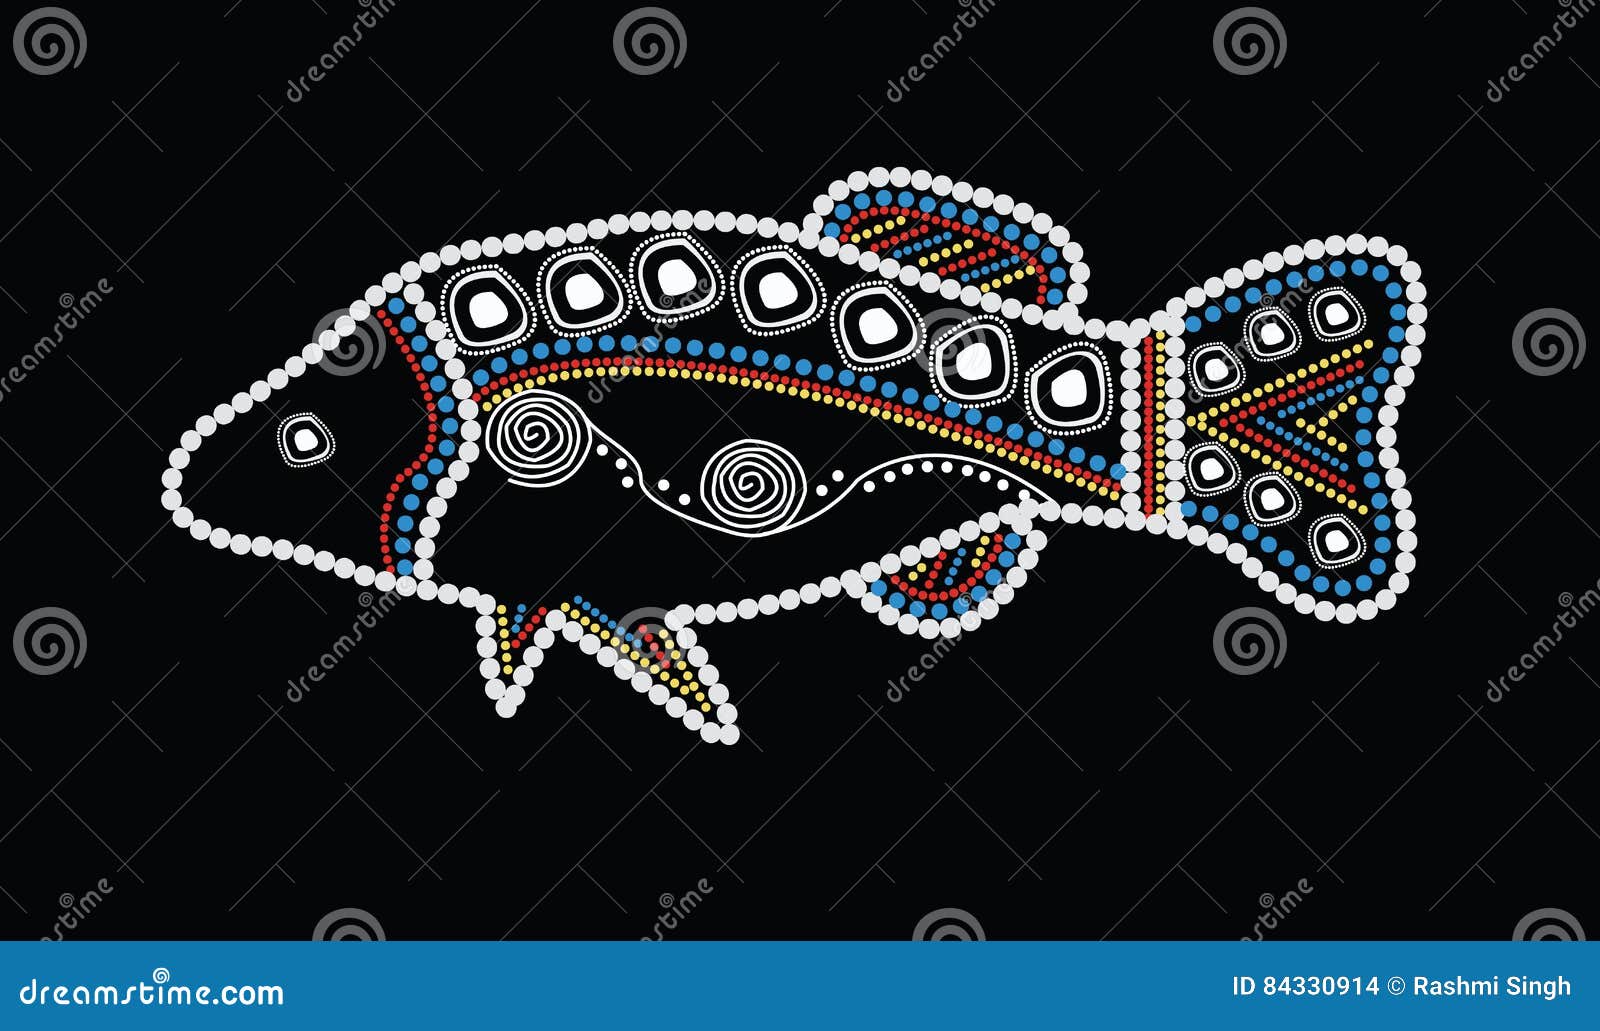 aboriginal art fish .